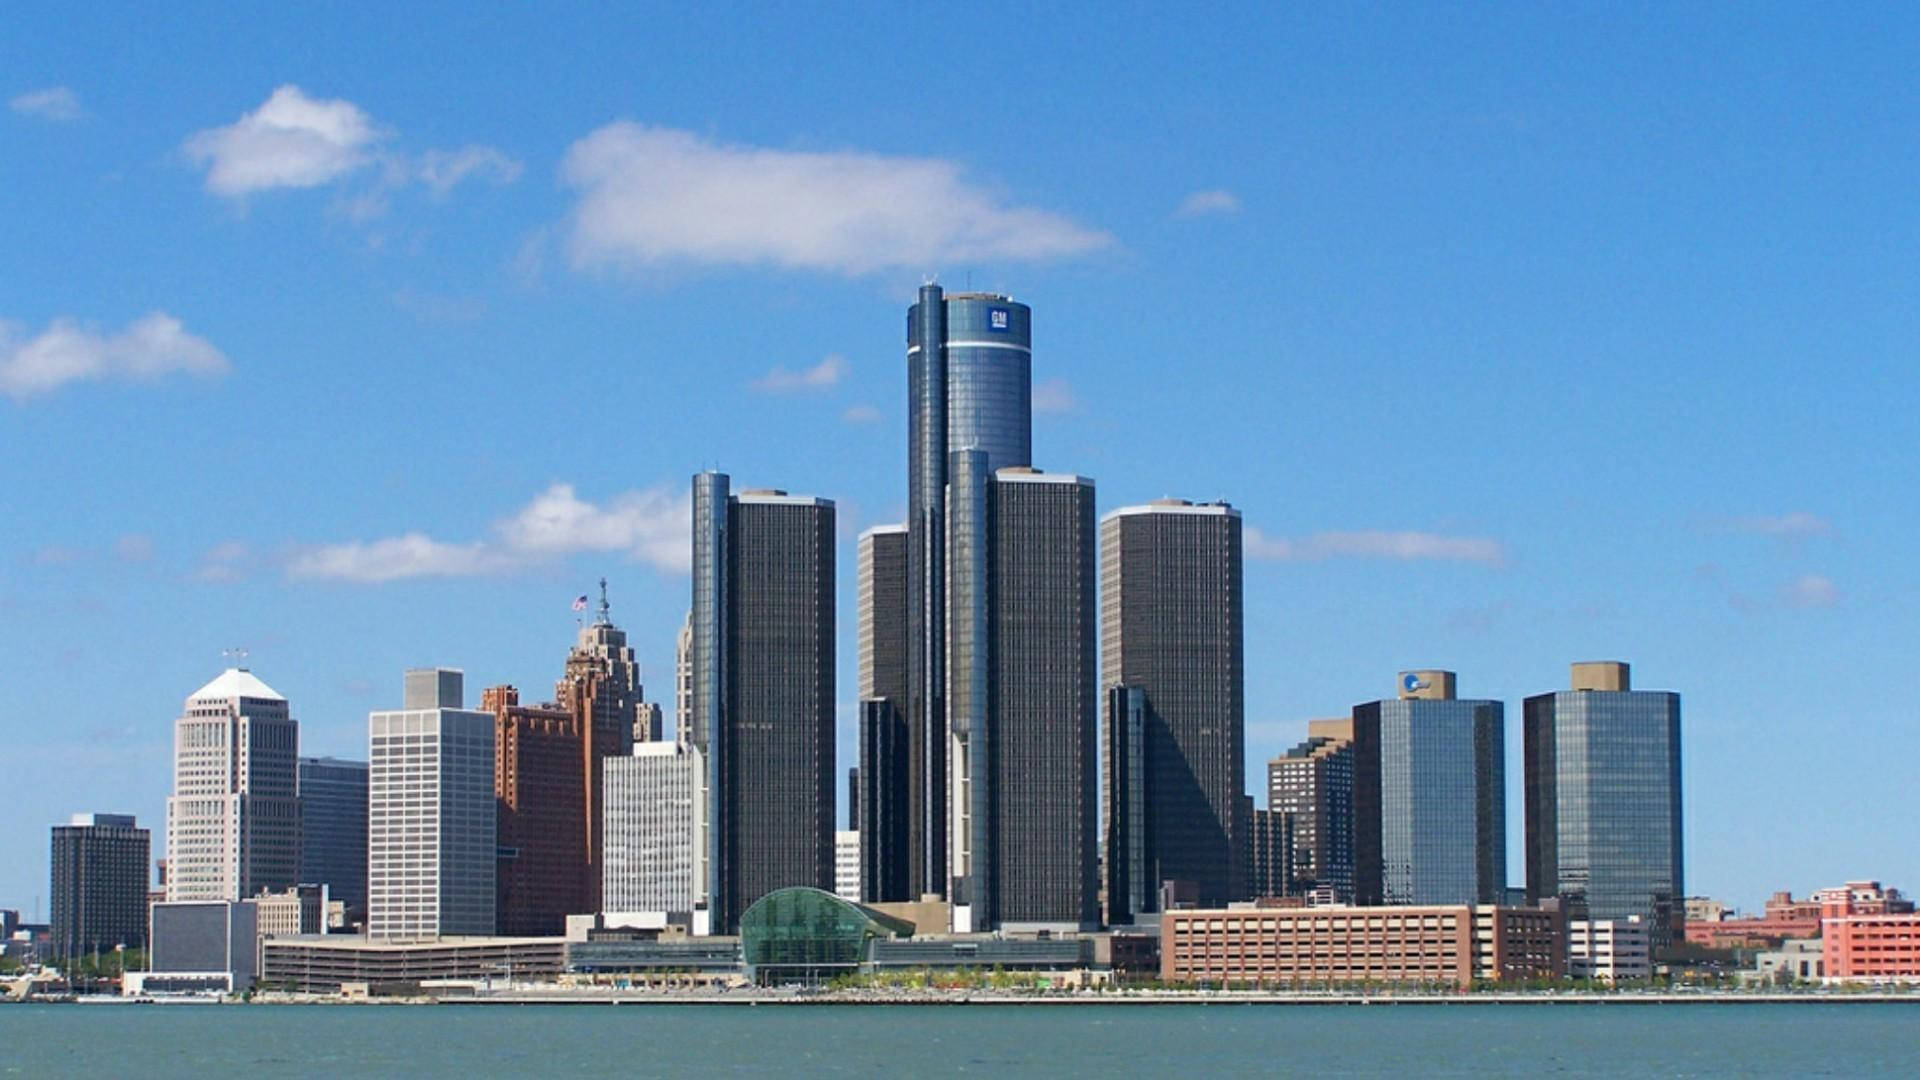 Detroit General Motors Renaissance Center Background